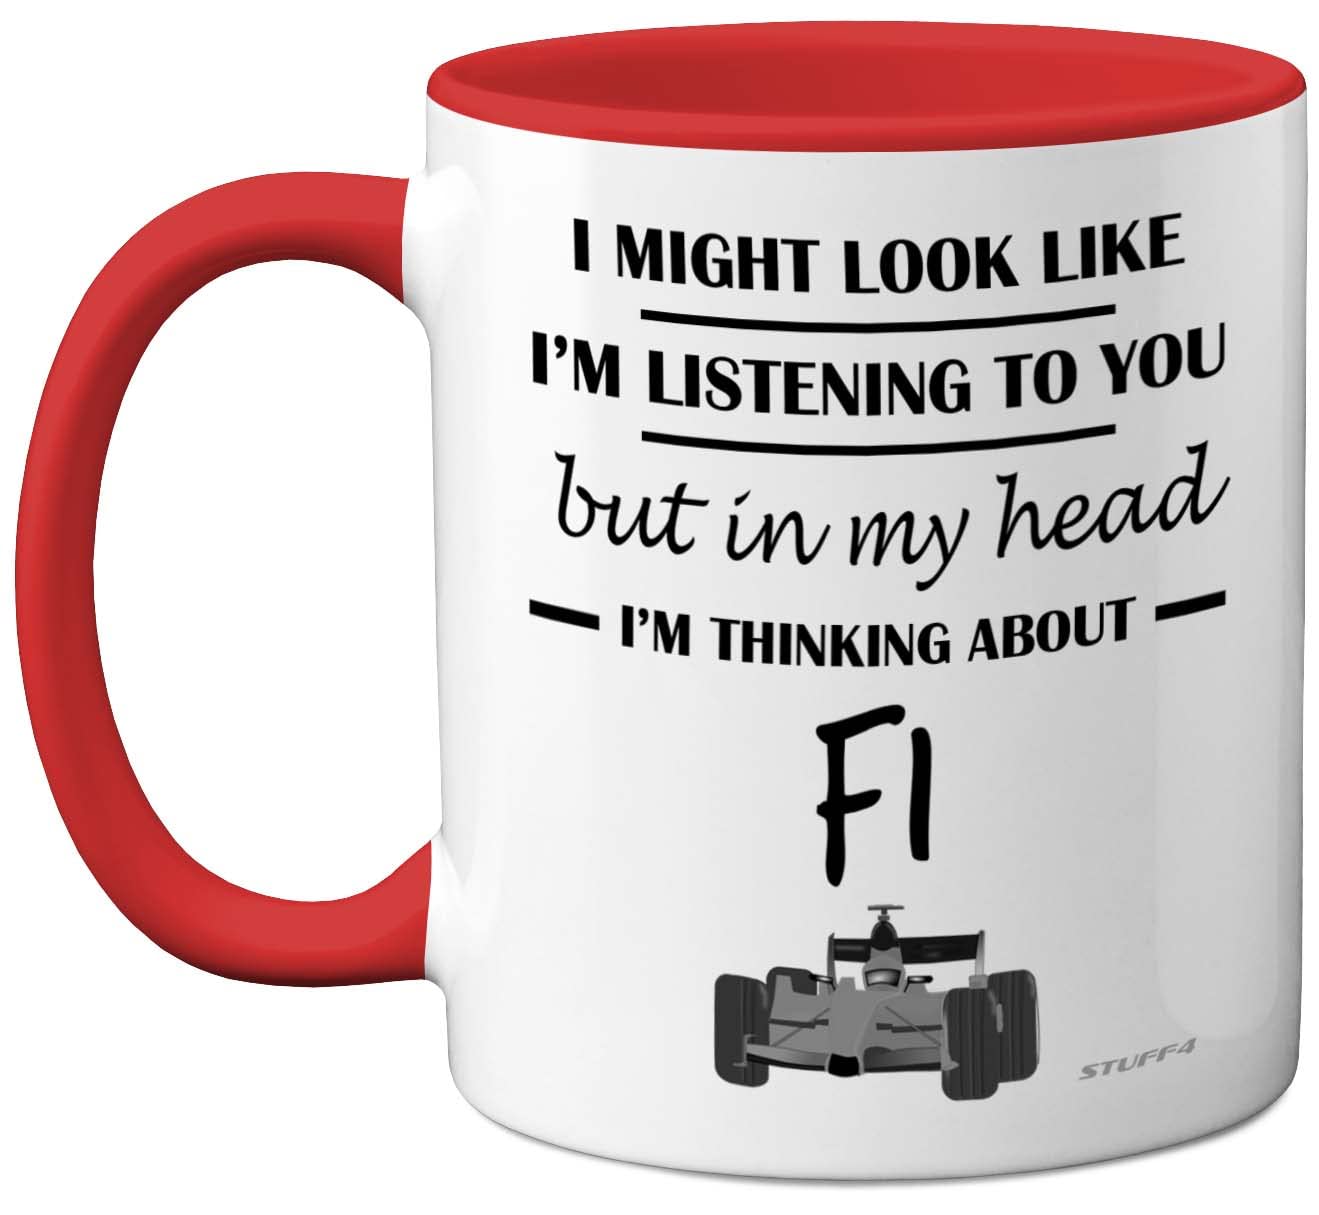 Stuff4 Formel 1 Geschenke – in My Head I'm Thinking About F1 – lustige F1-Geschenke für Männer Autoliebhaber Geschenke für Ihn F1-Tasse Formel 1-Geschenke 325 ml Keramik spülmaschinenfest roter Griff